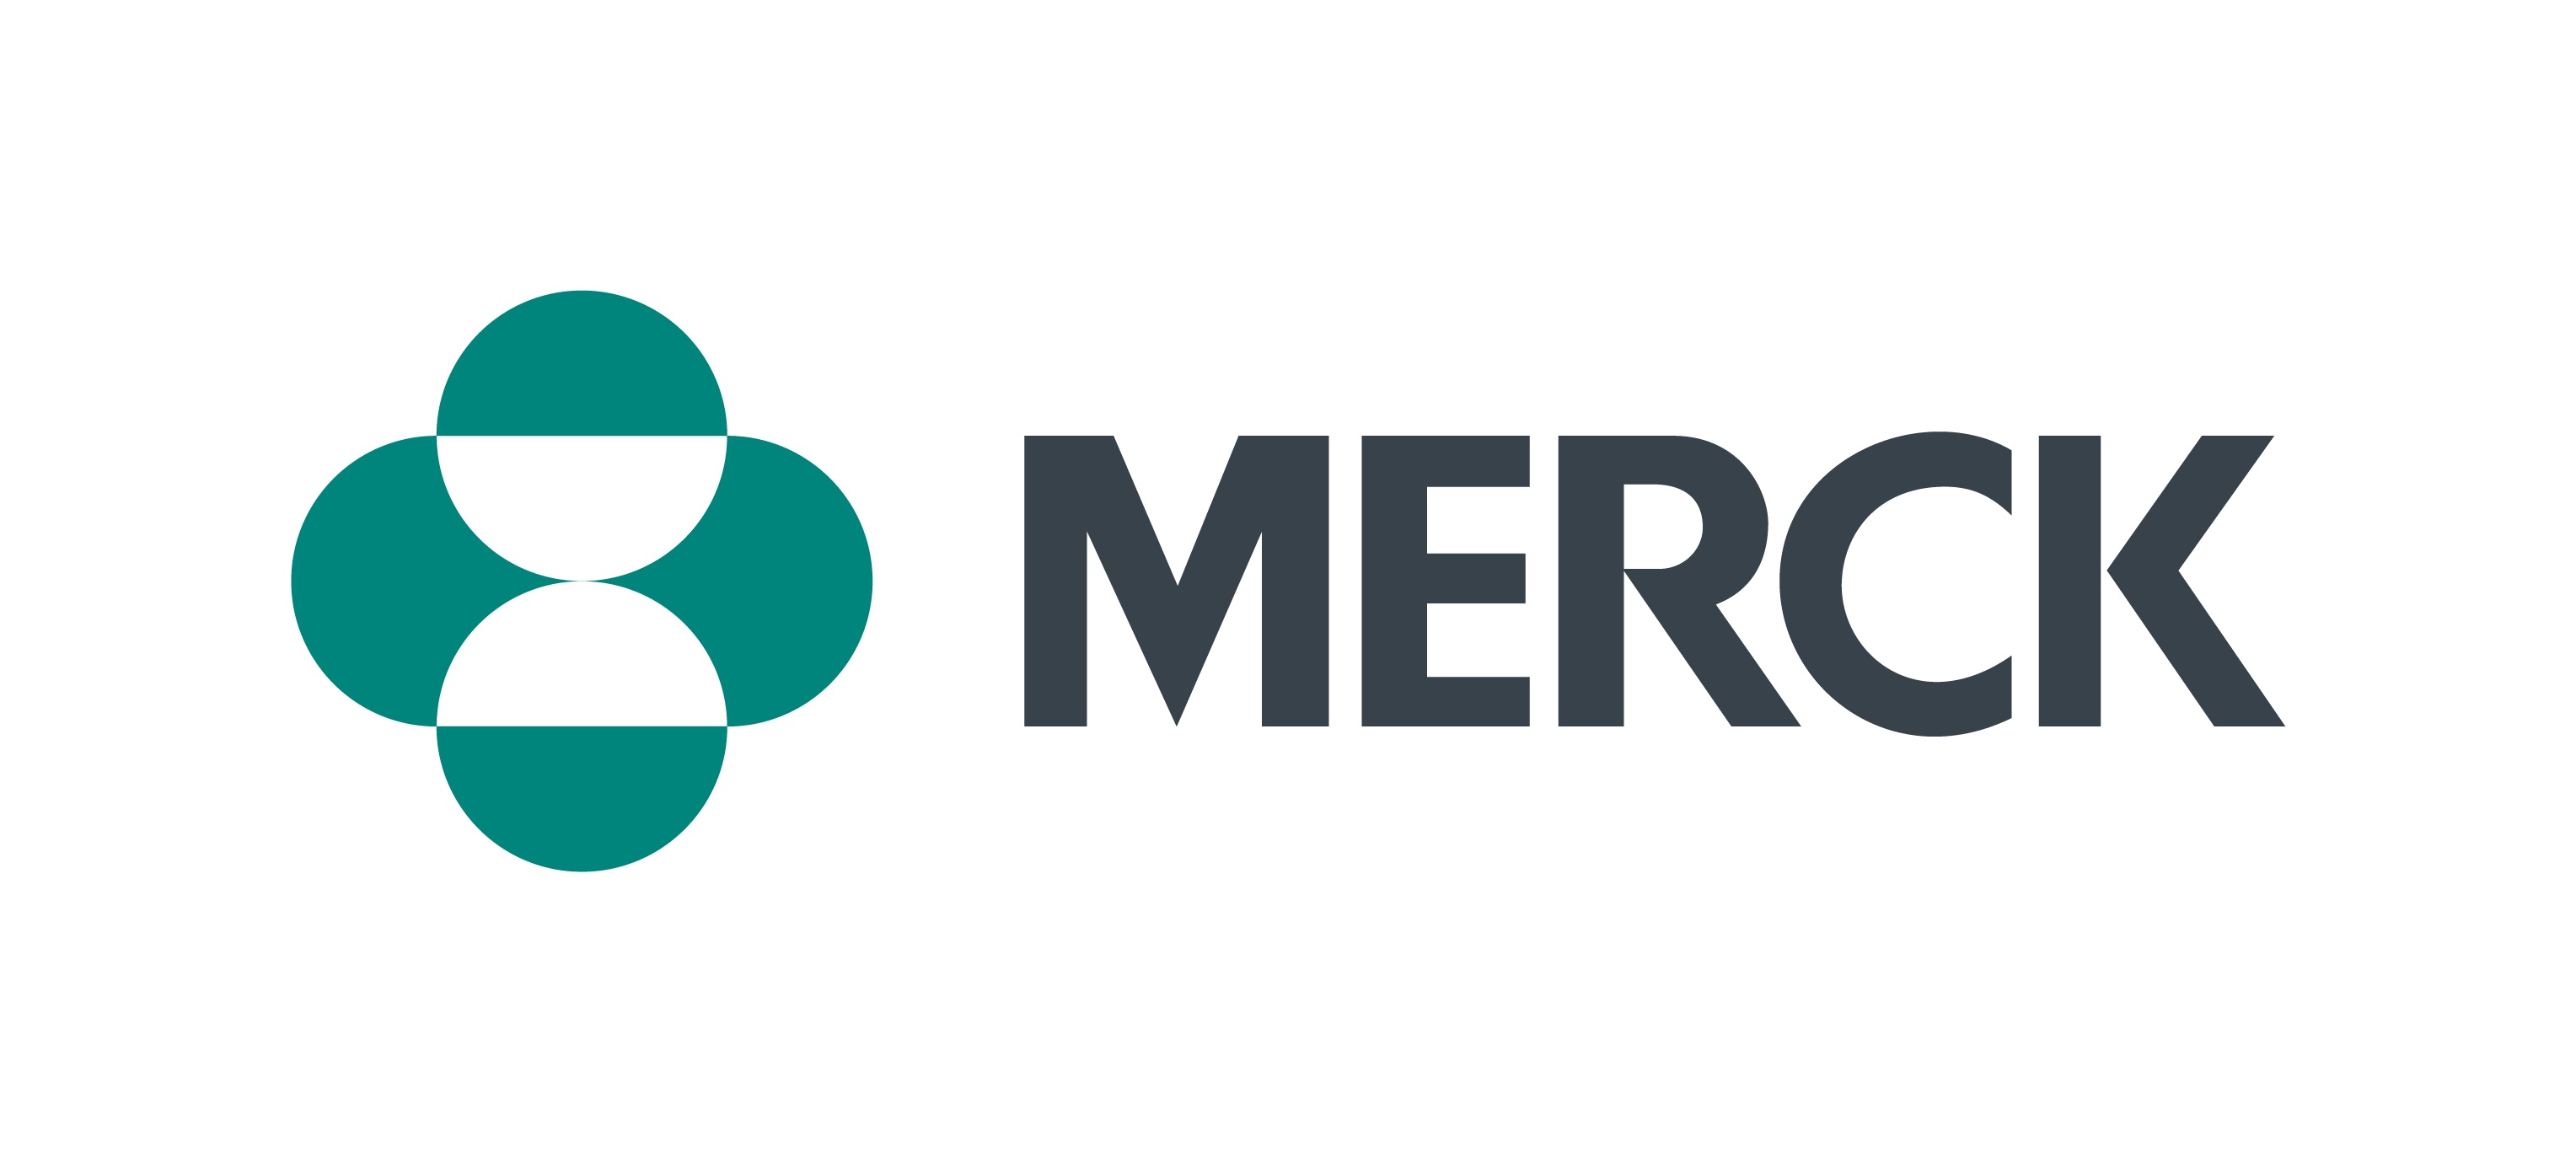 02852_Merck_Logo_Horizontal_Teal&Grey_RGB.jpg